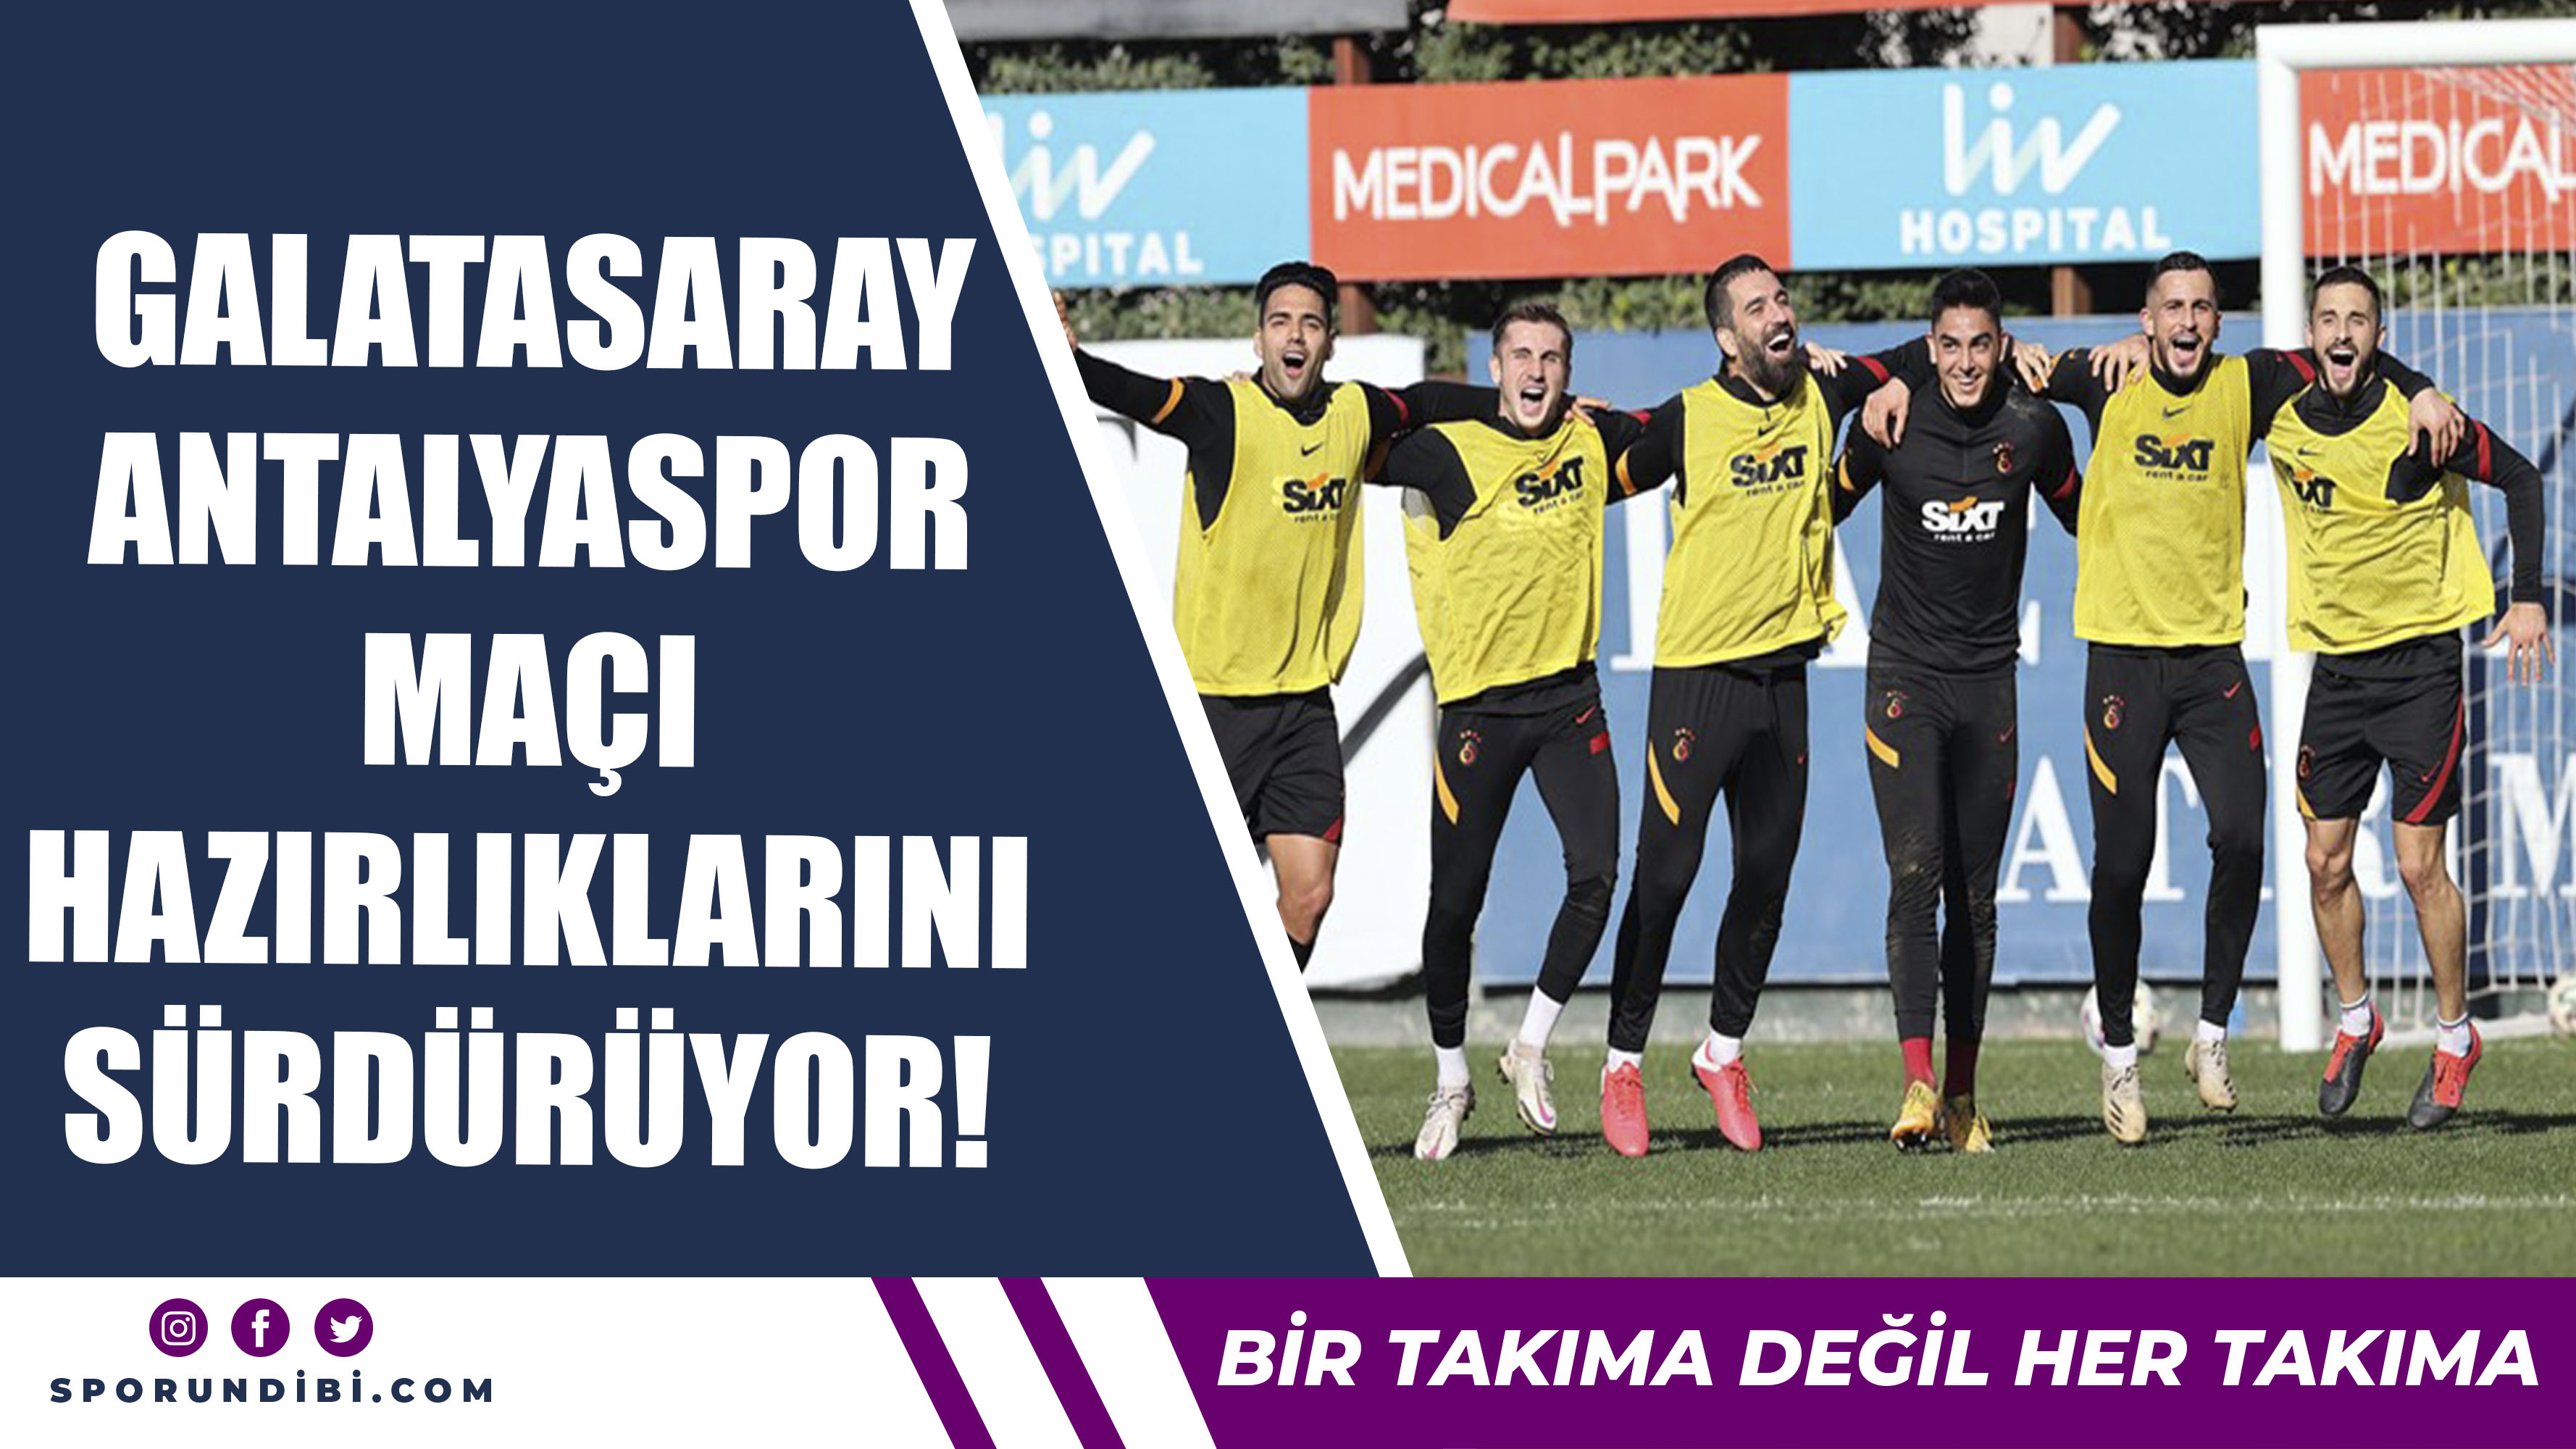 Galatasaray Antalyaspor Maçı Hazırlıklarını Sürdürüyor!